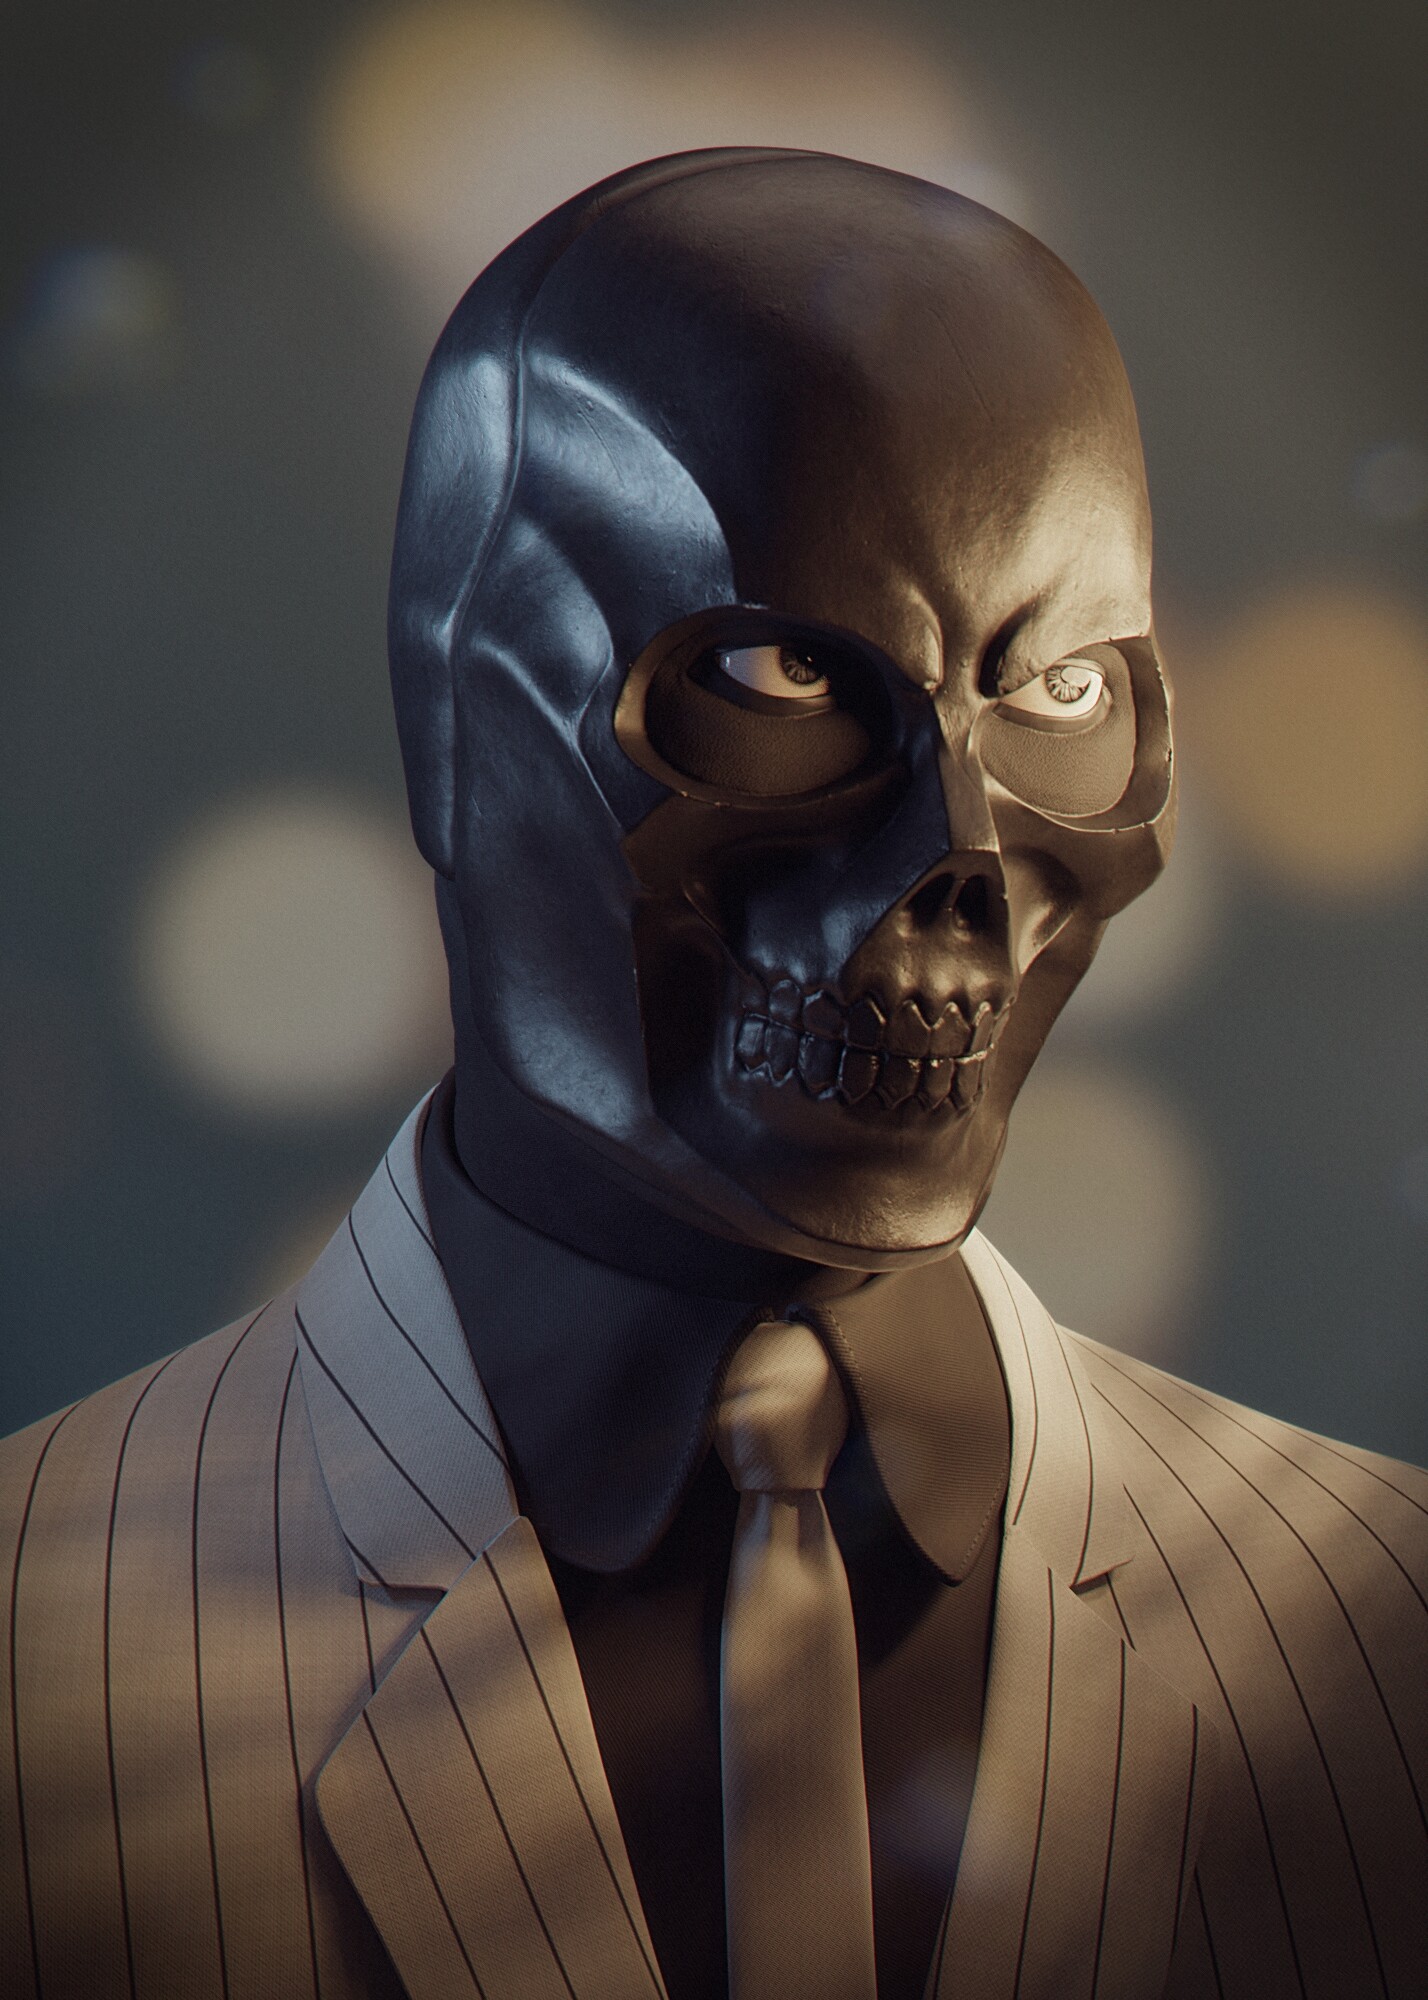 Black Mask - Batman's Super Villain - Finished Projects - Blender